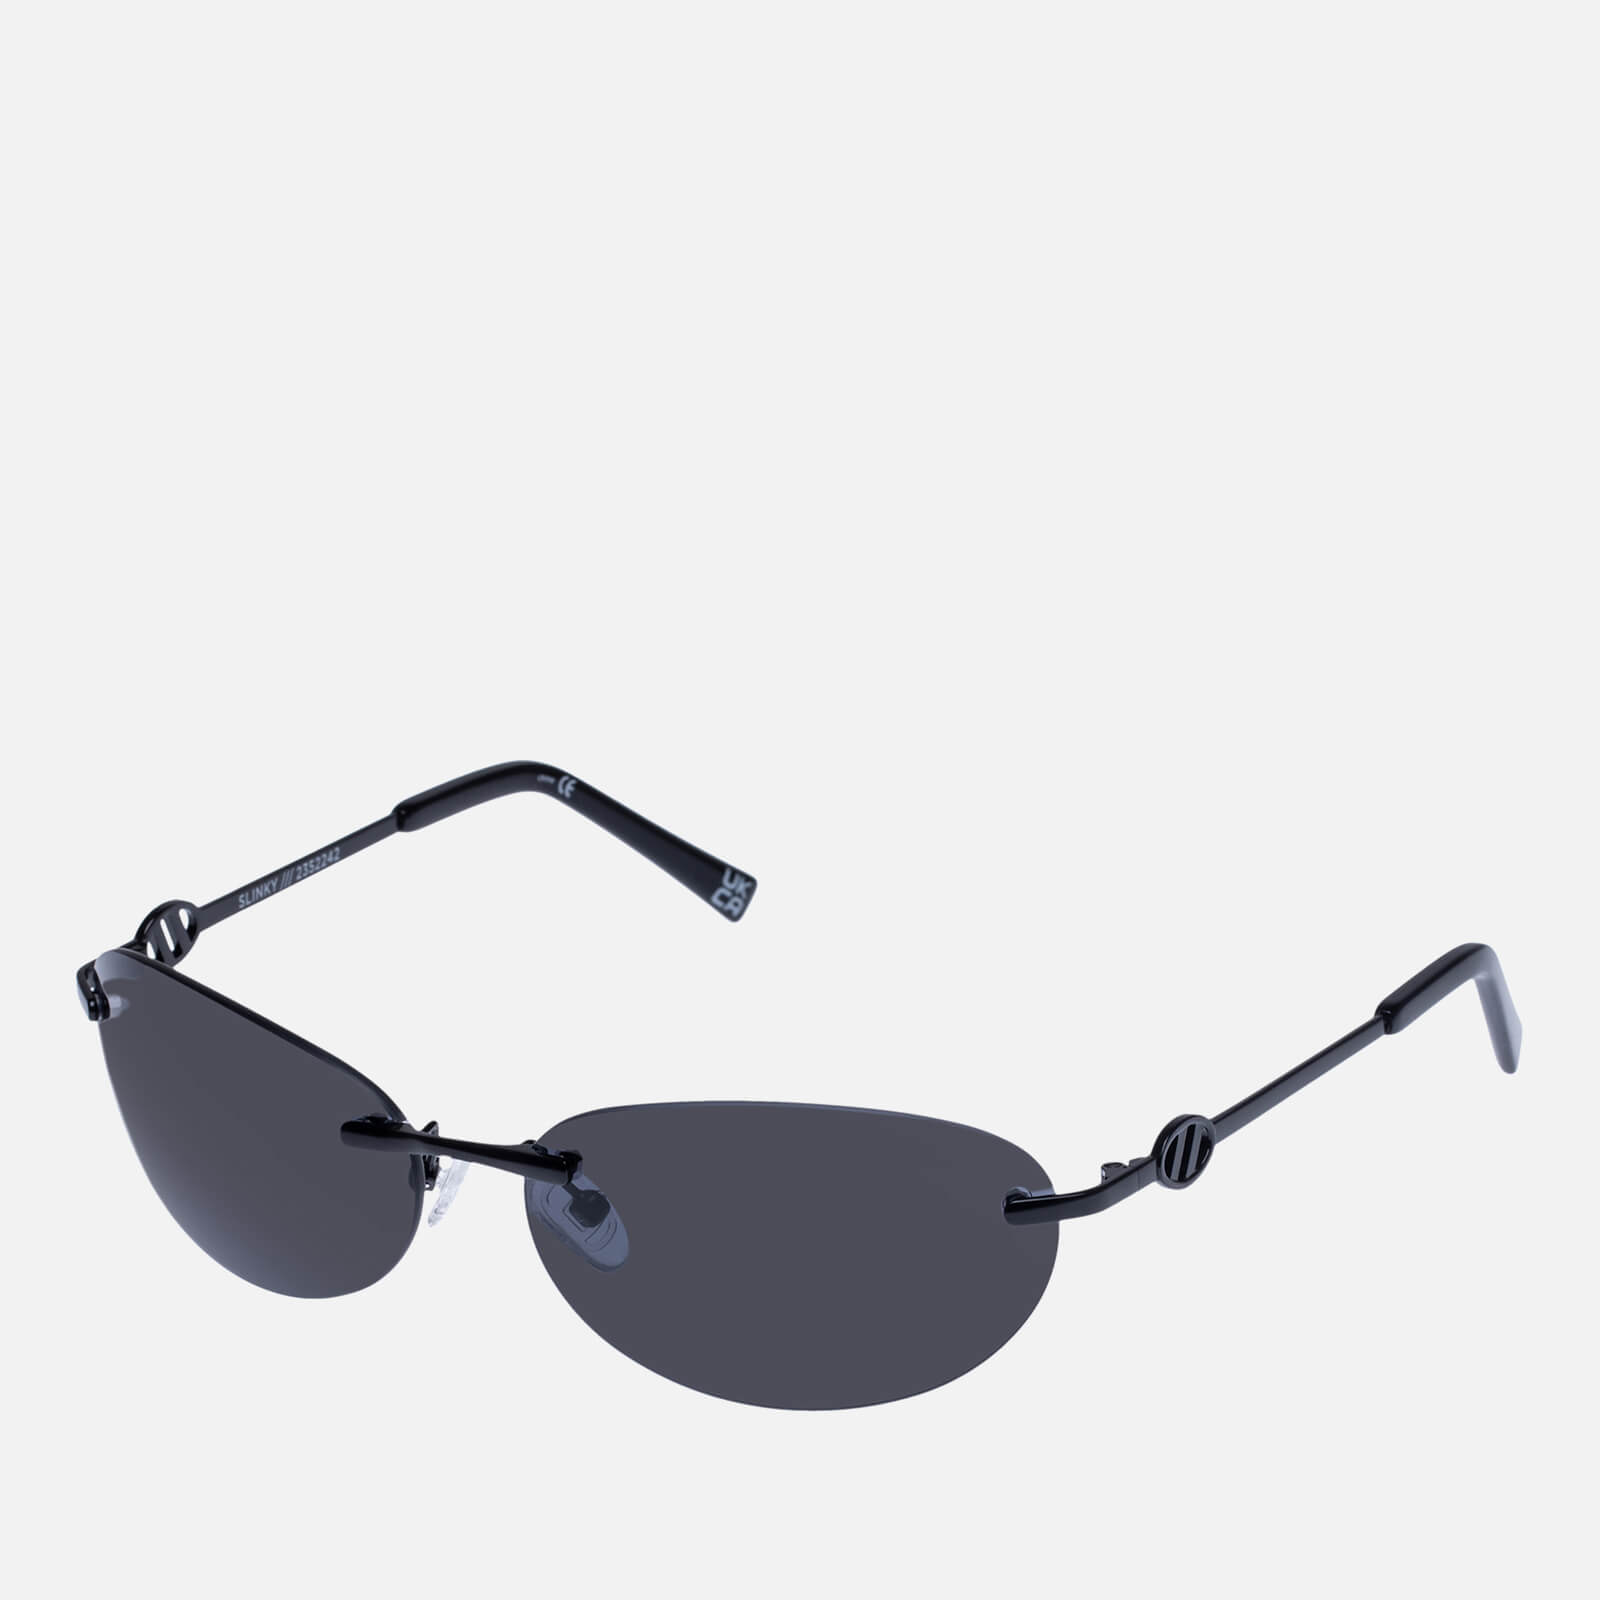 Le Specs Women's SLINKY Oval Sunglasses - Matte Black